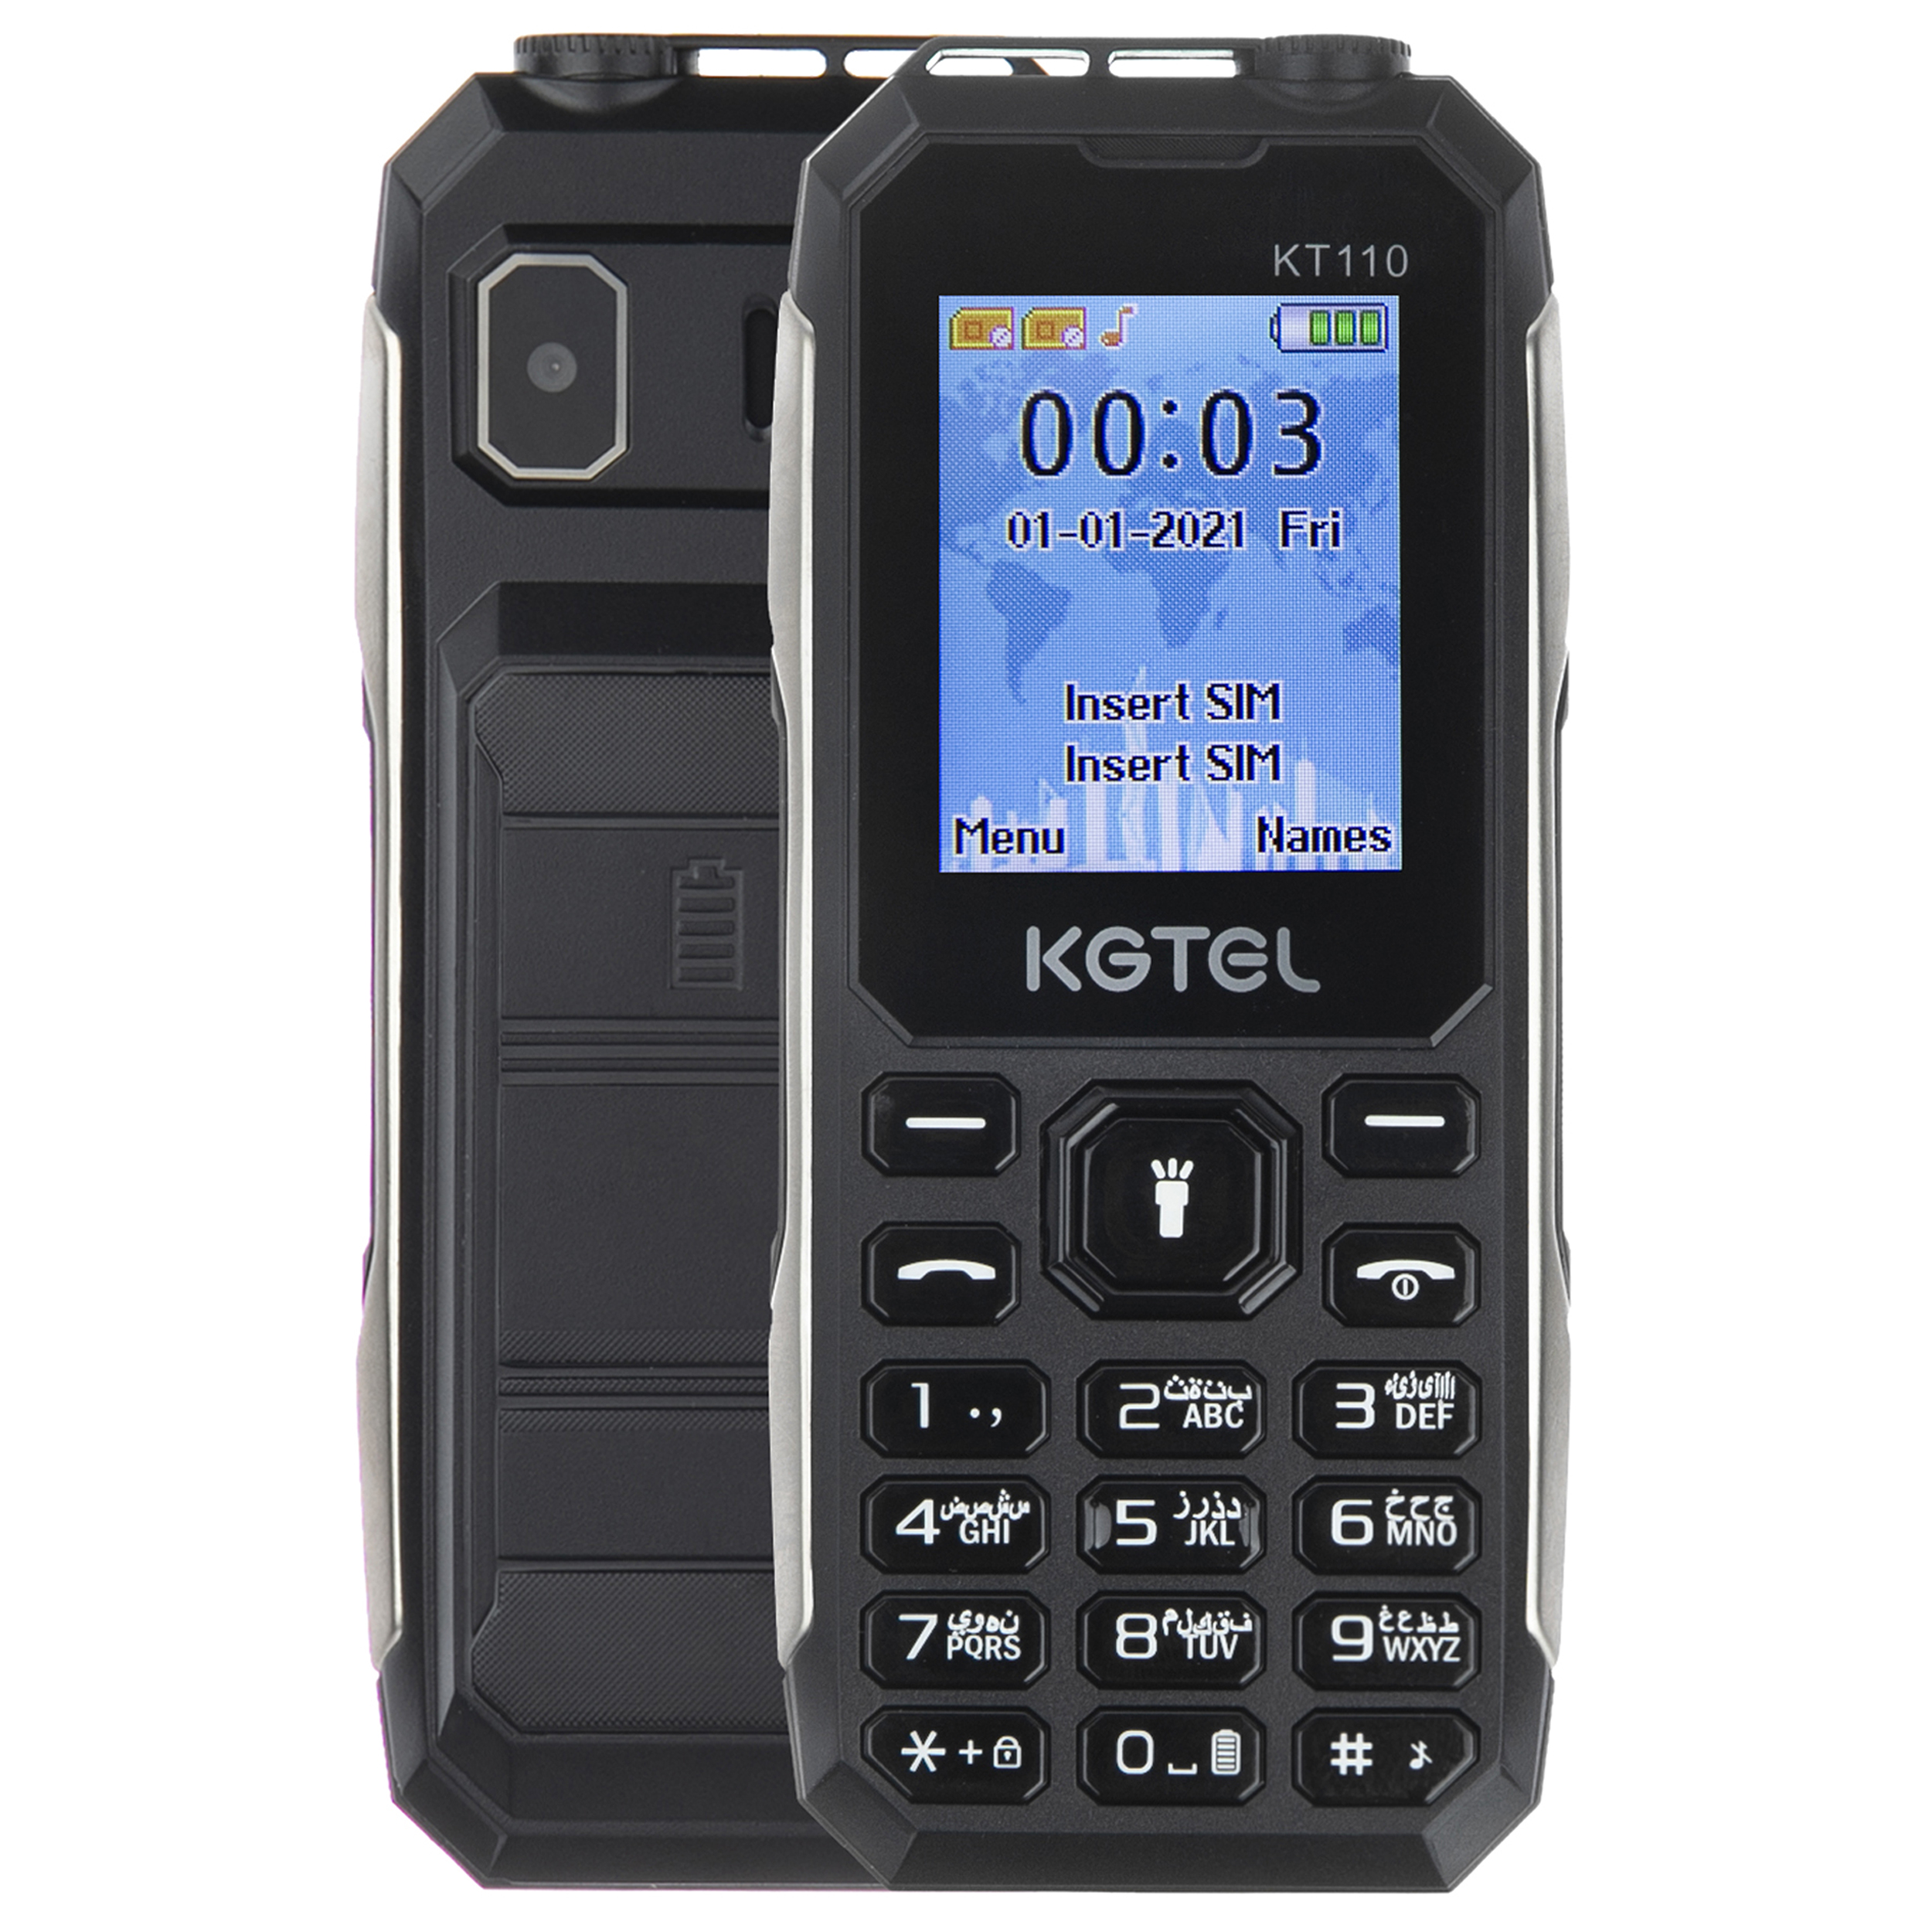 گوشی موبایل کاجیتل مدل KT110 دو سیم کارت ظرفیت 64 مگابایت و رم 32 مگابایت -خرید کن